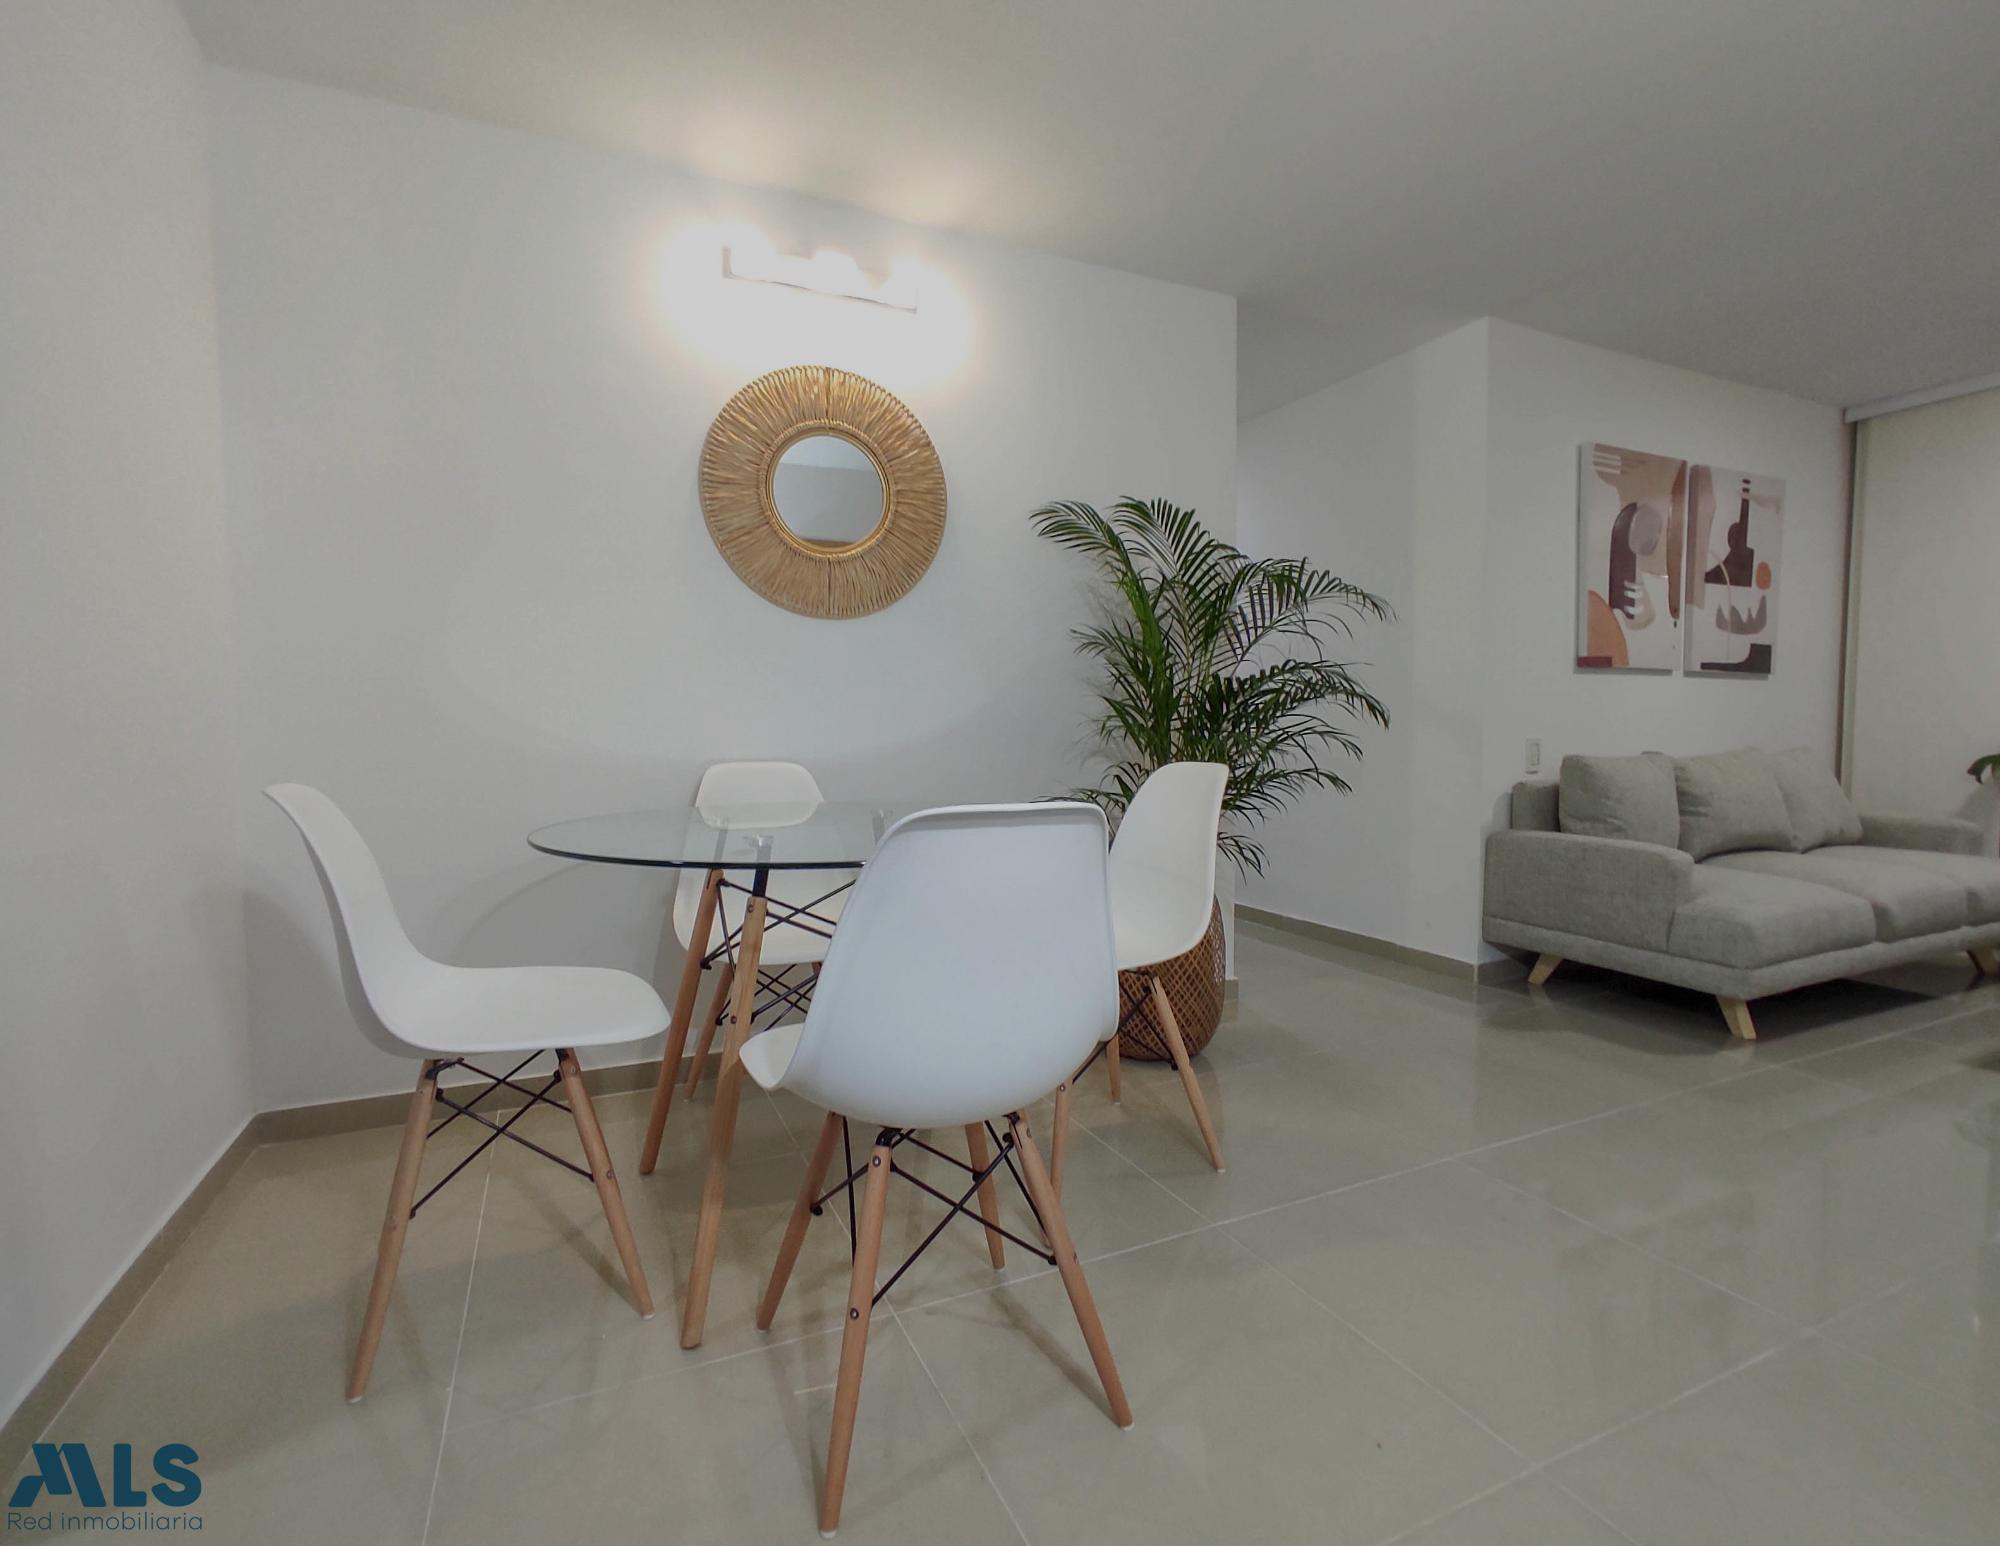 Espectacular apartamento en Venta, Provenza El Poblado medellin - provenza